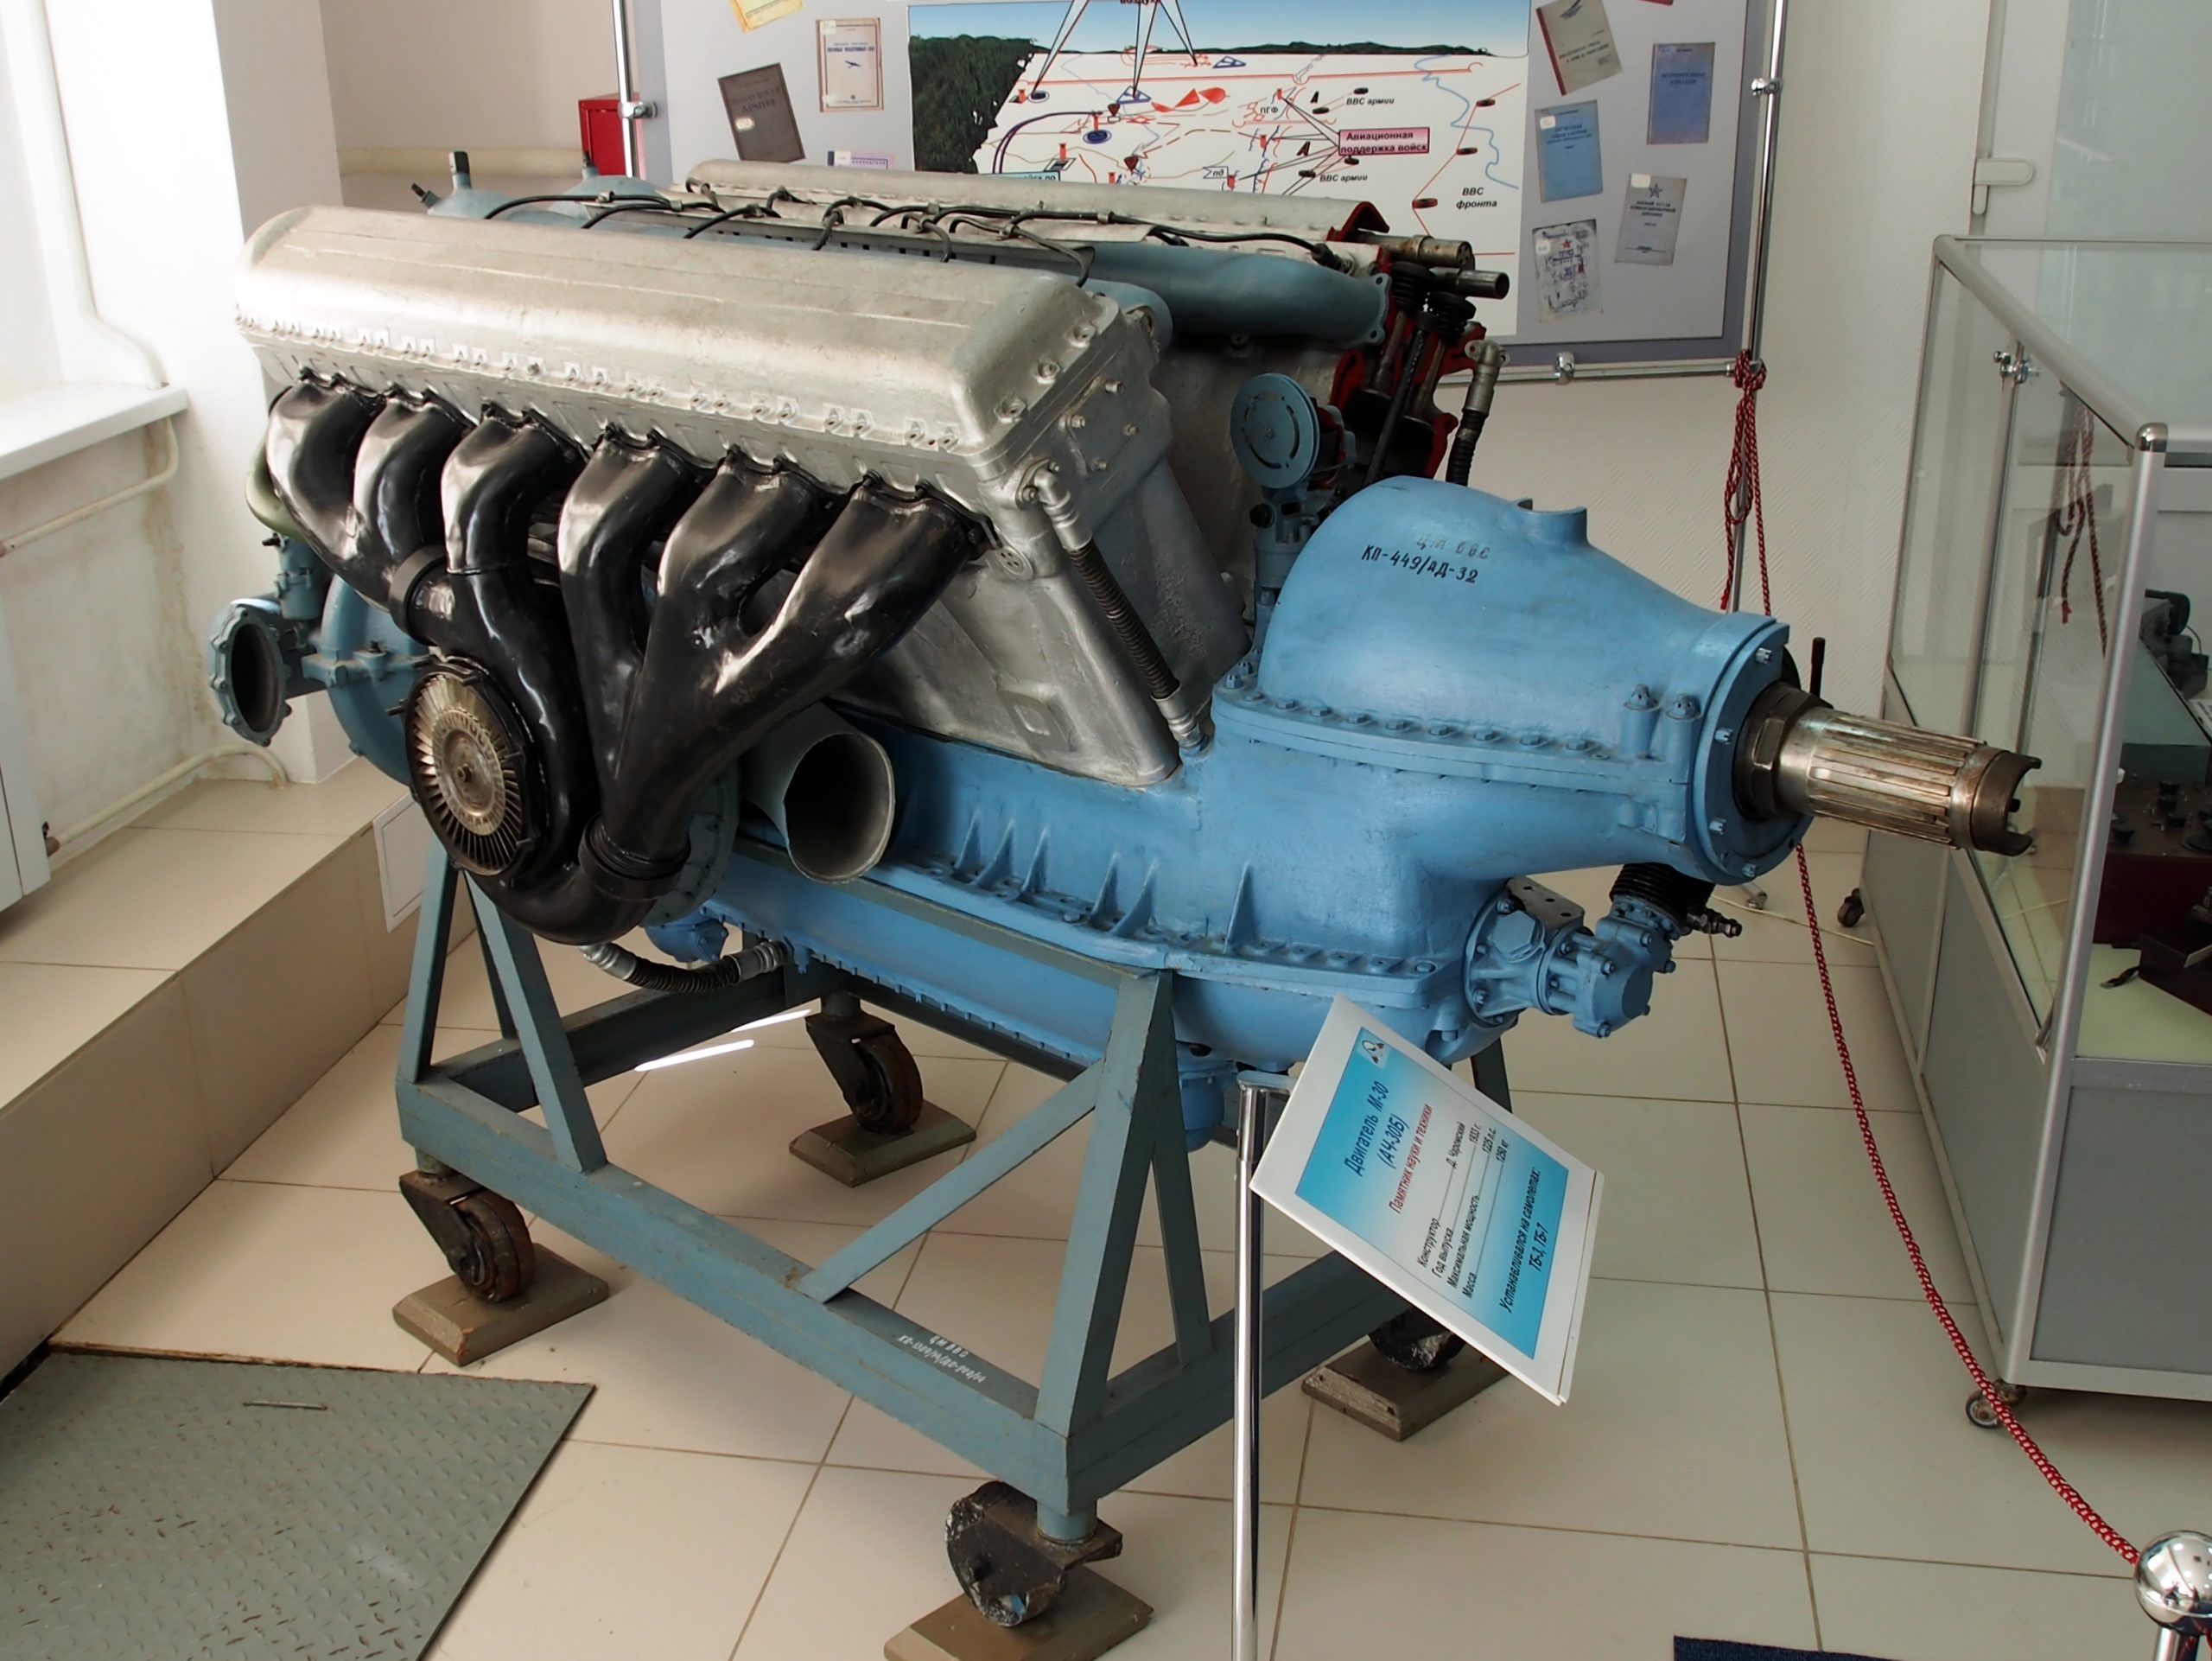 Motori C330 - karakteristike kultne jedinice poljskog proizvođača